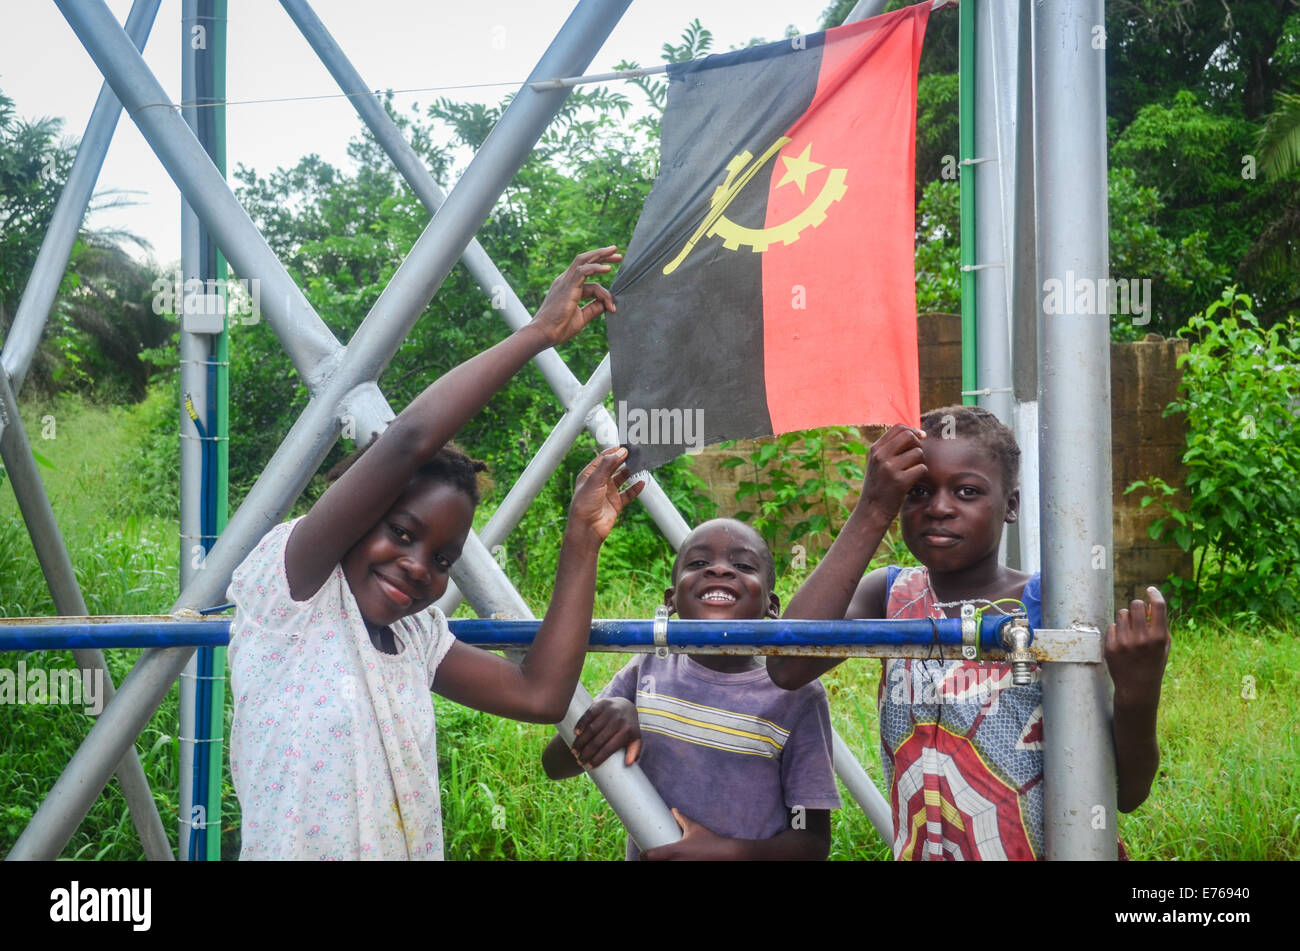 Sorridenti bambini angolani in posa con la bandiera dell'Angola Foto Stock